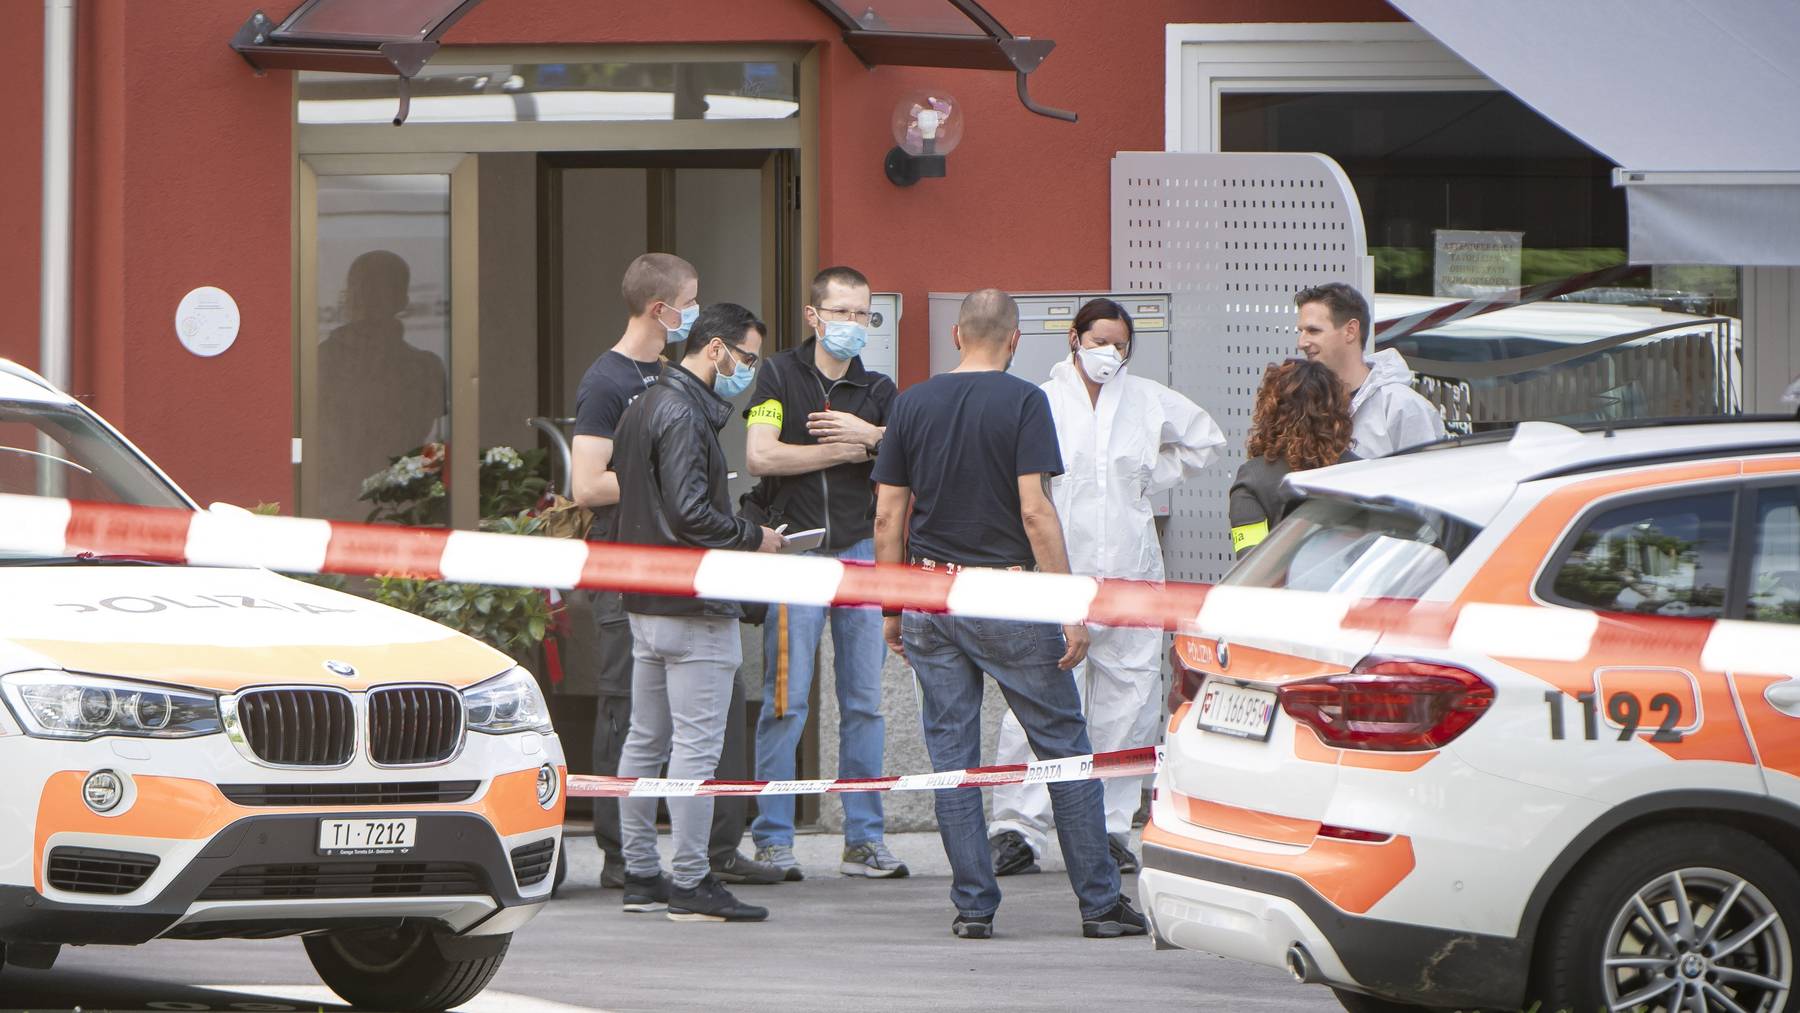 Die Polizei und Forensiker bei einem Restaurant am Rande der Piazza Grande von Giubiasco, wo eine Schiesserei mit drei Toten stattfand.